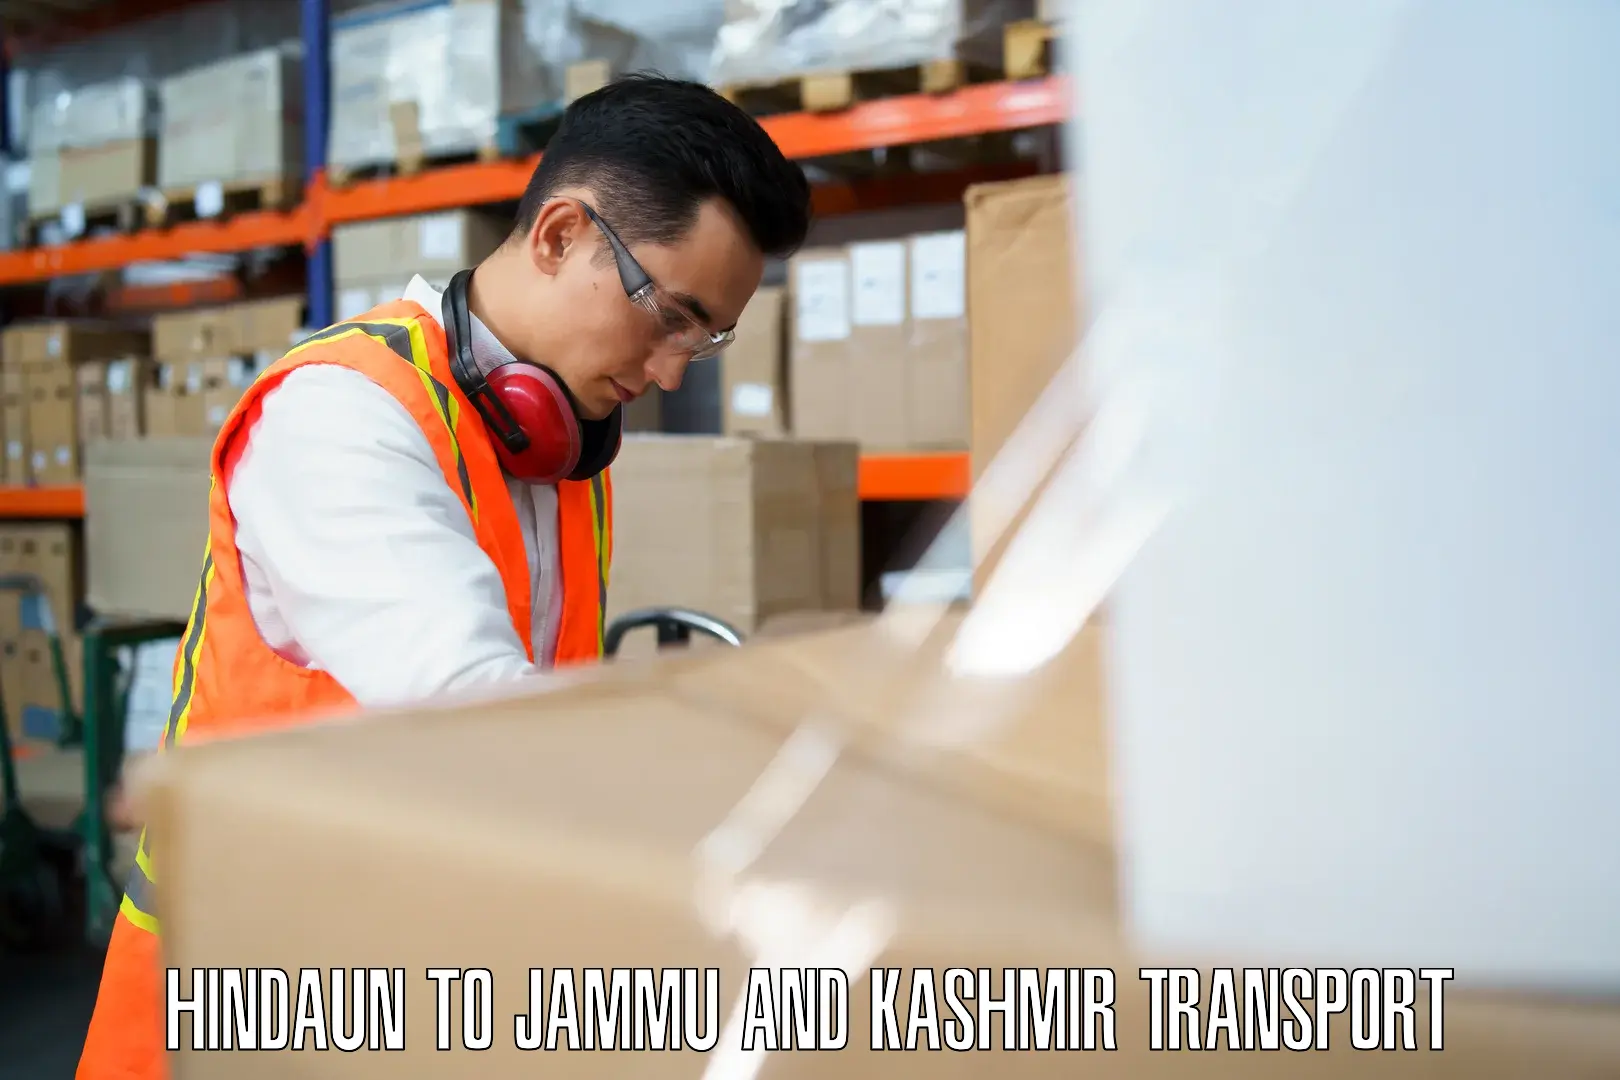 Daily parcel service transport Hindaun to Jammu